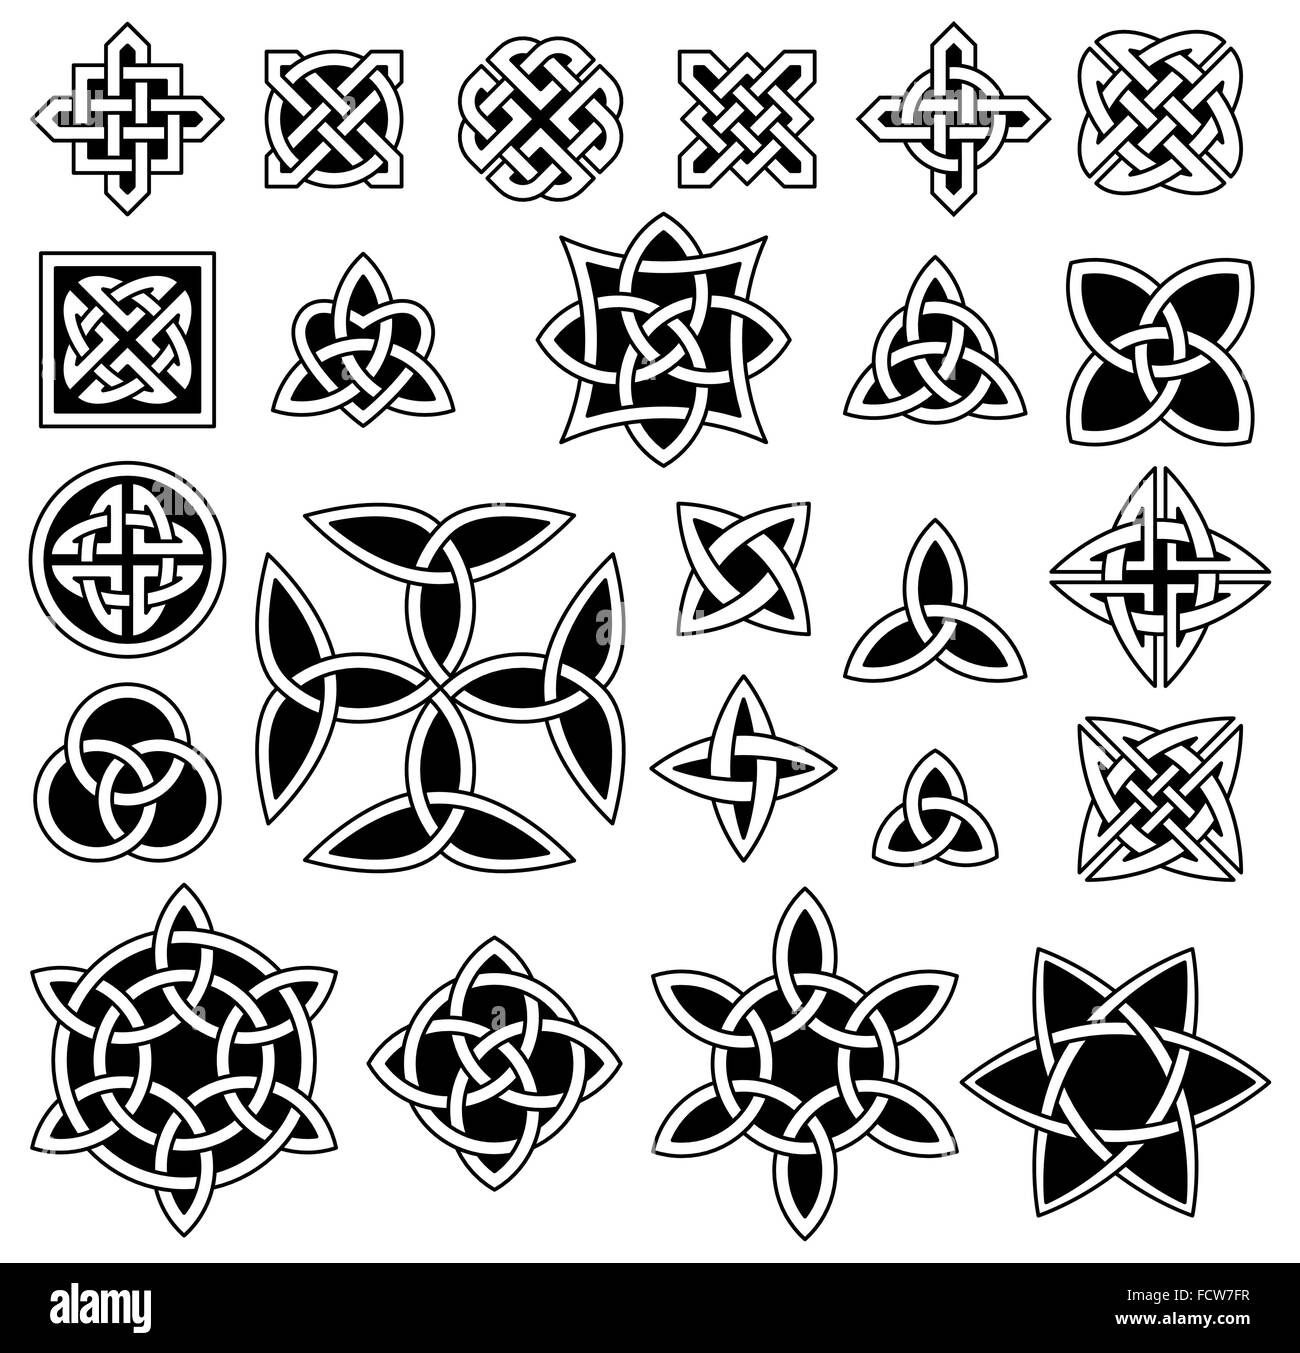 24 Celtic nodi (Triquetra (Trinity) nodo, Quartenary nodo, ecc.) raccolta Illustrazione Vettoriale